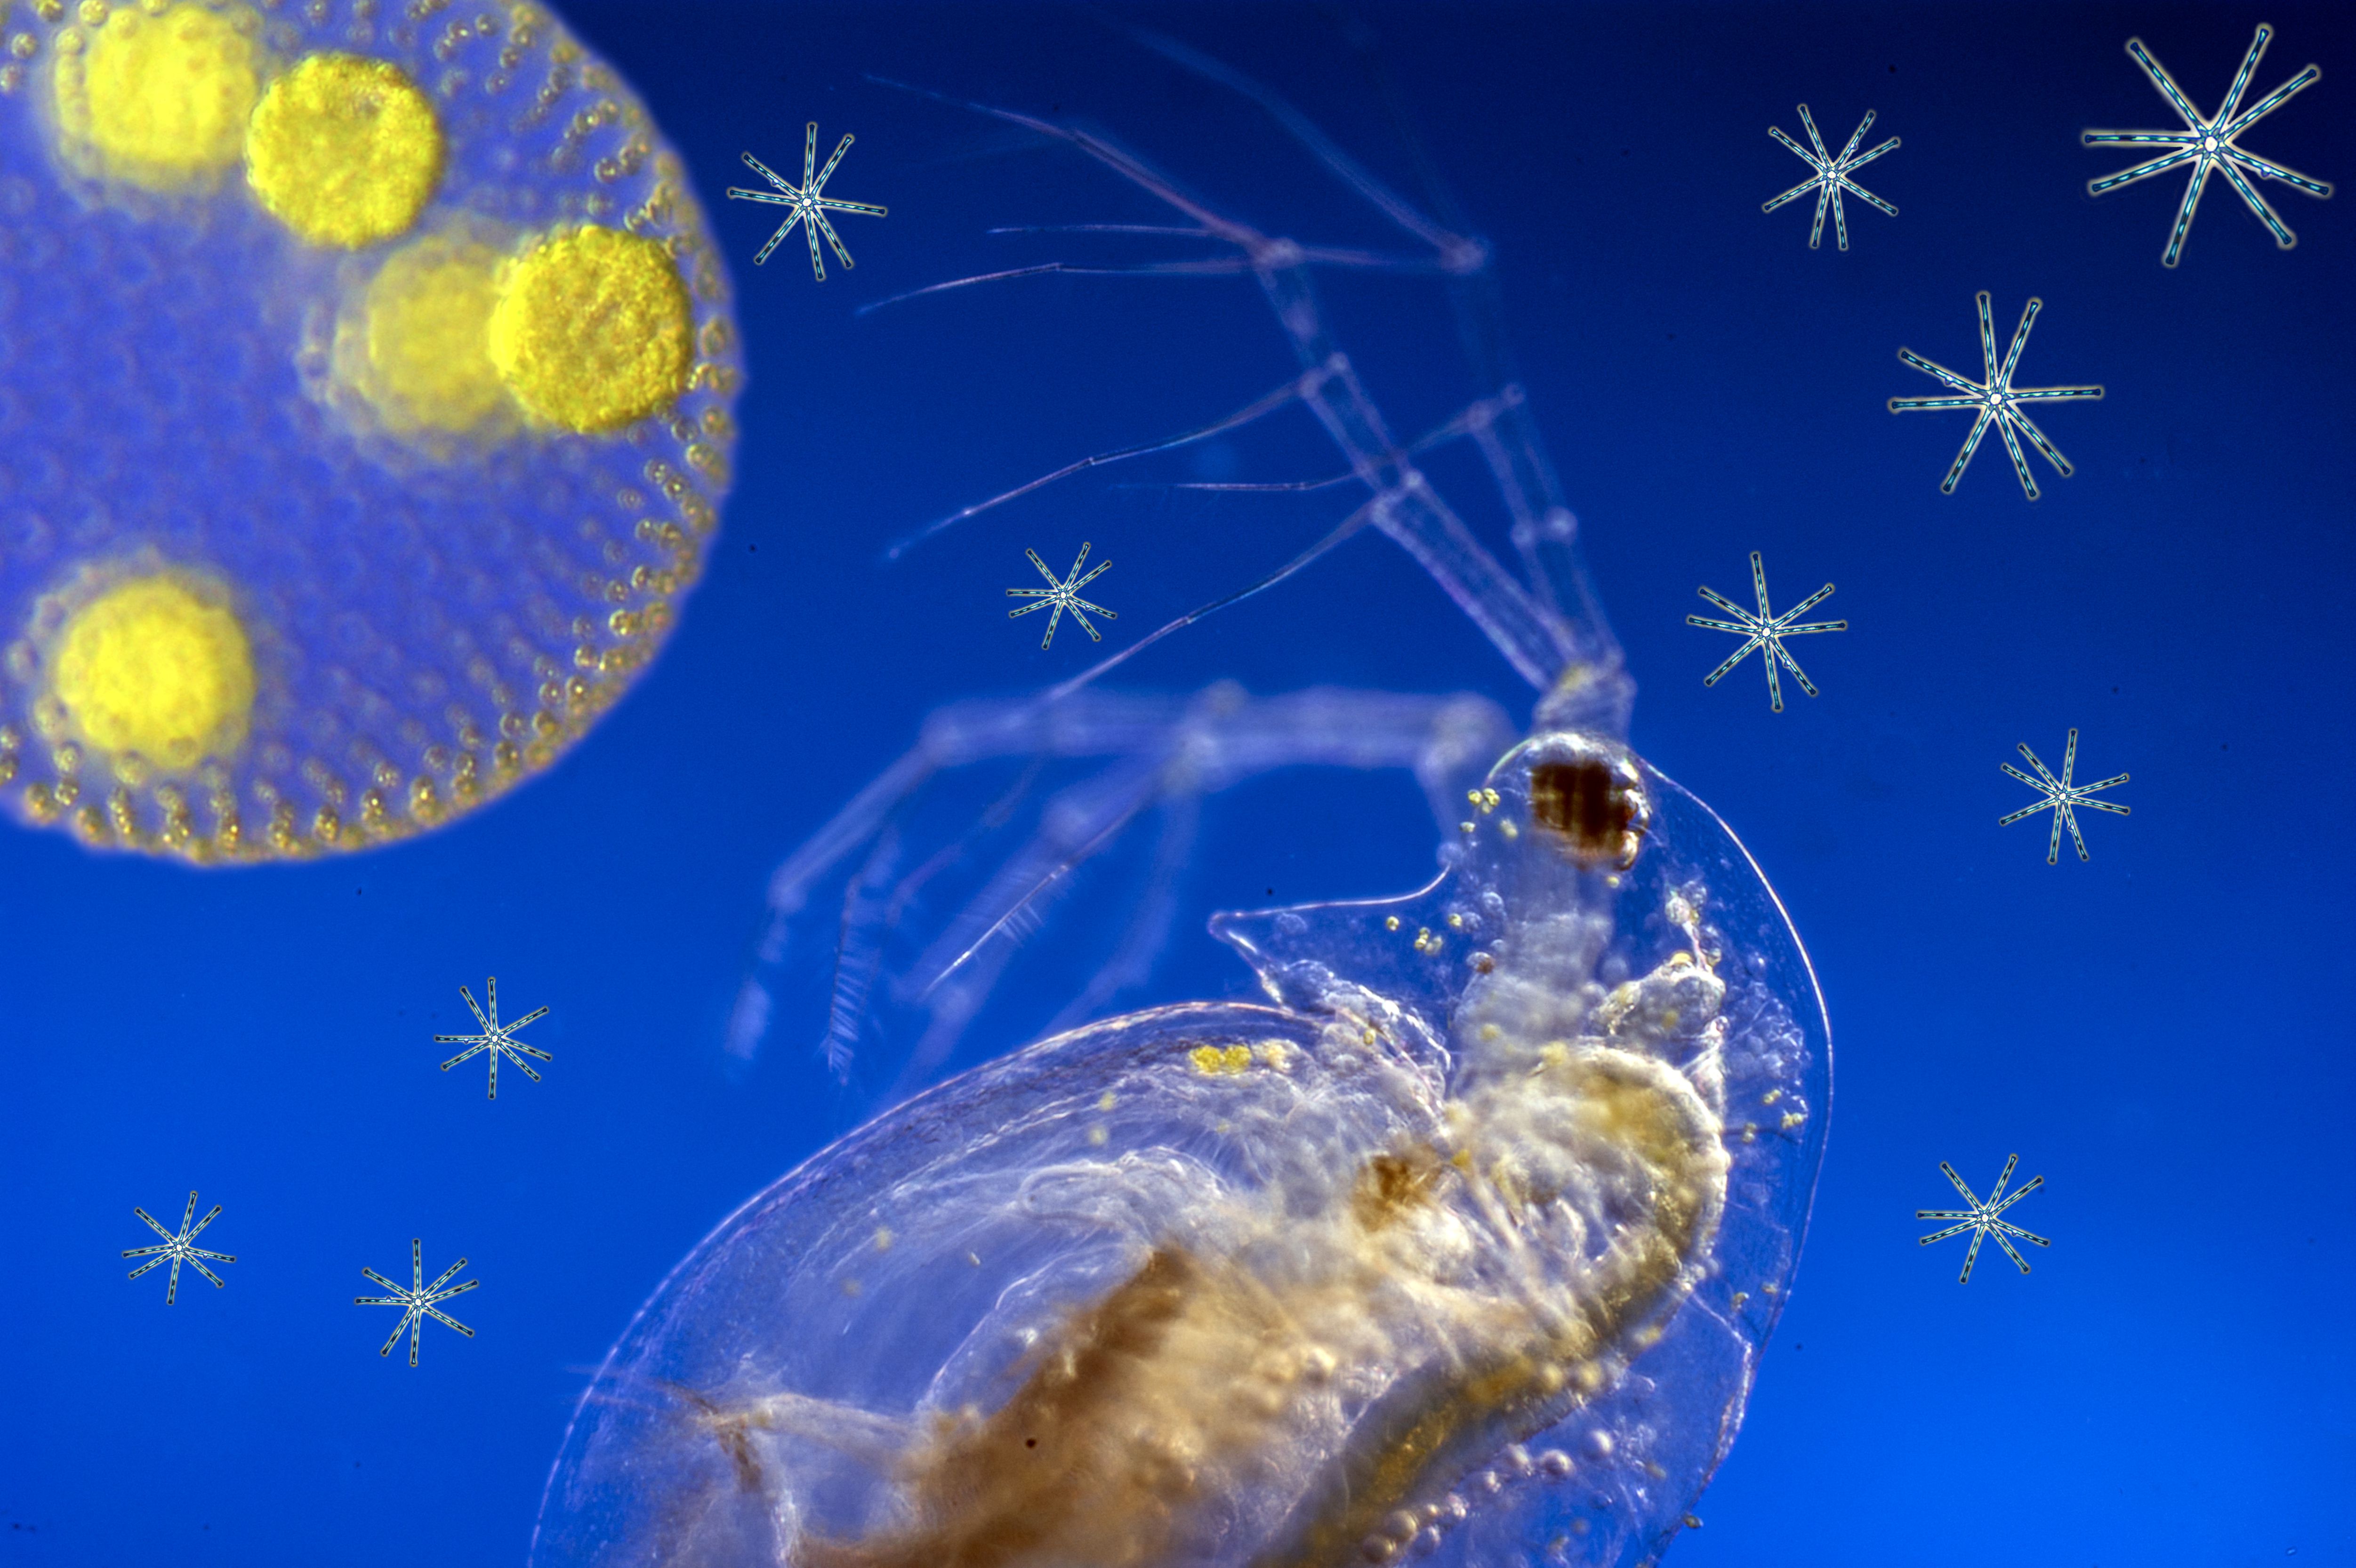 Waterflea with plankton sky composing